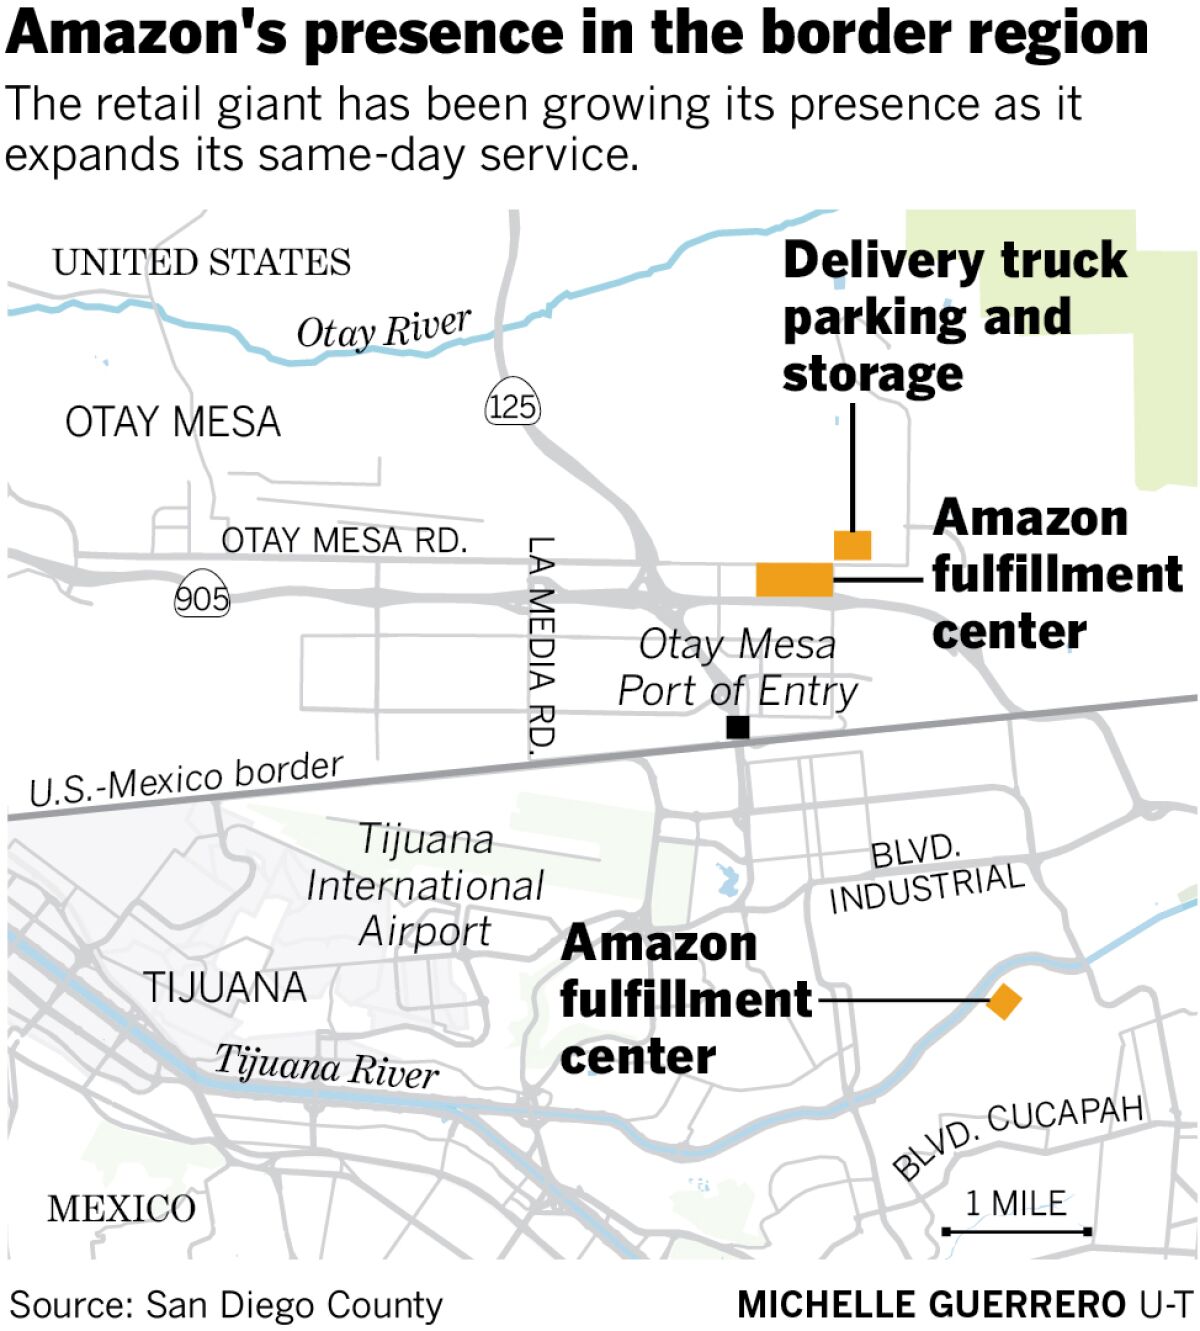 Amazon's presence in the border region